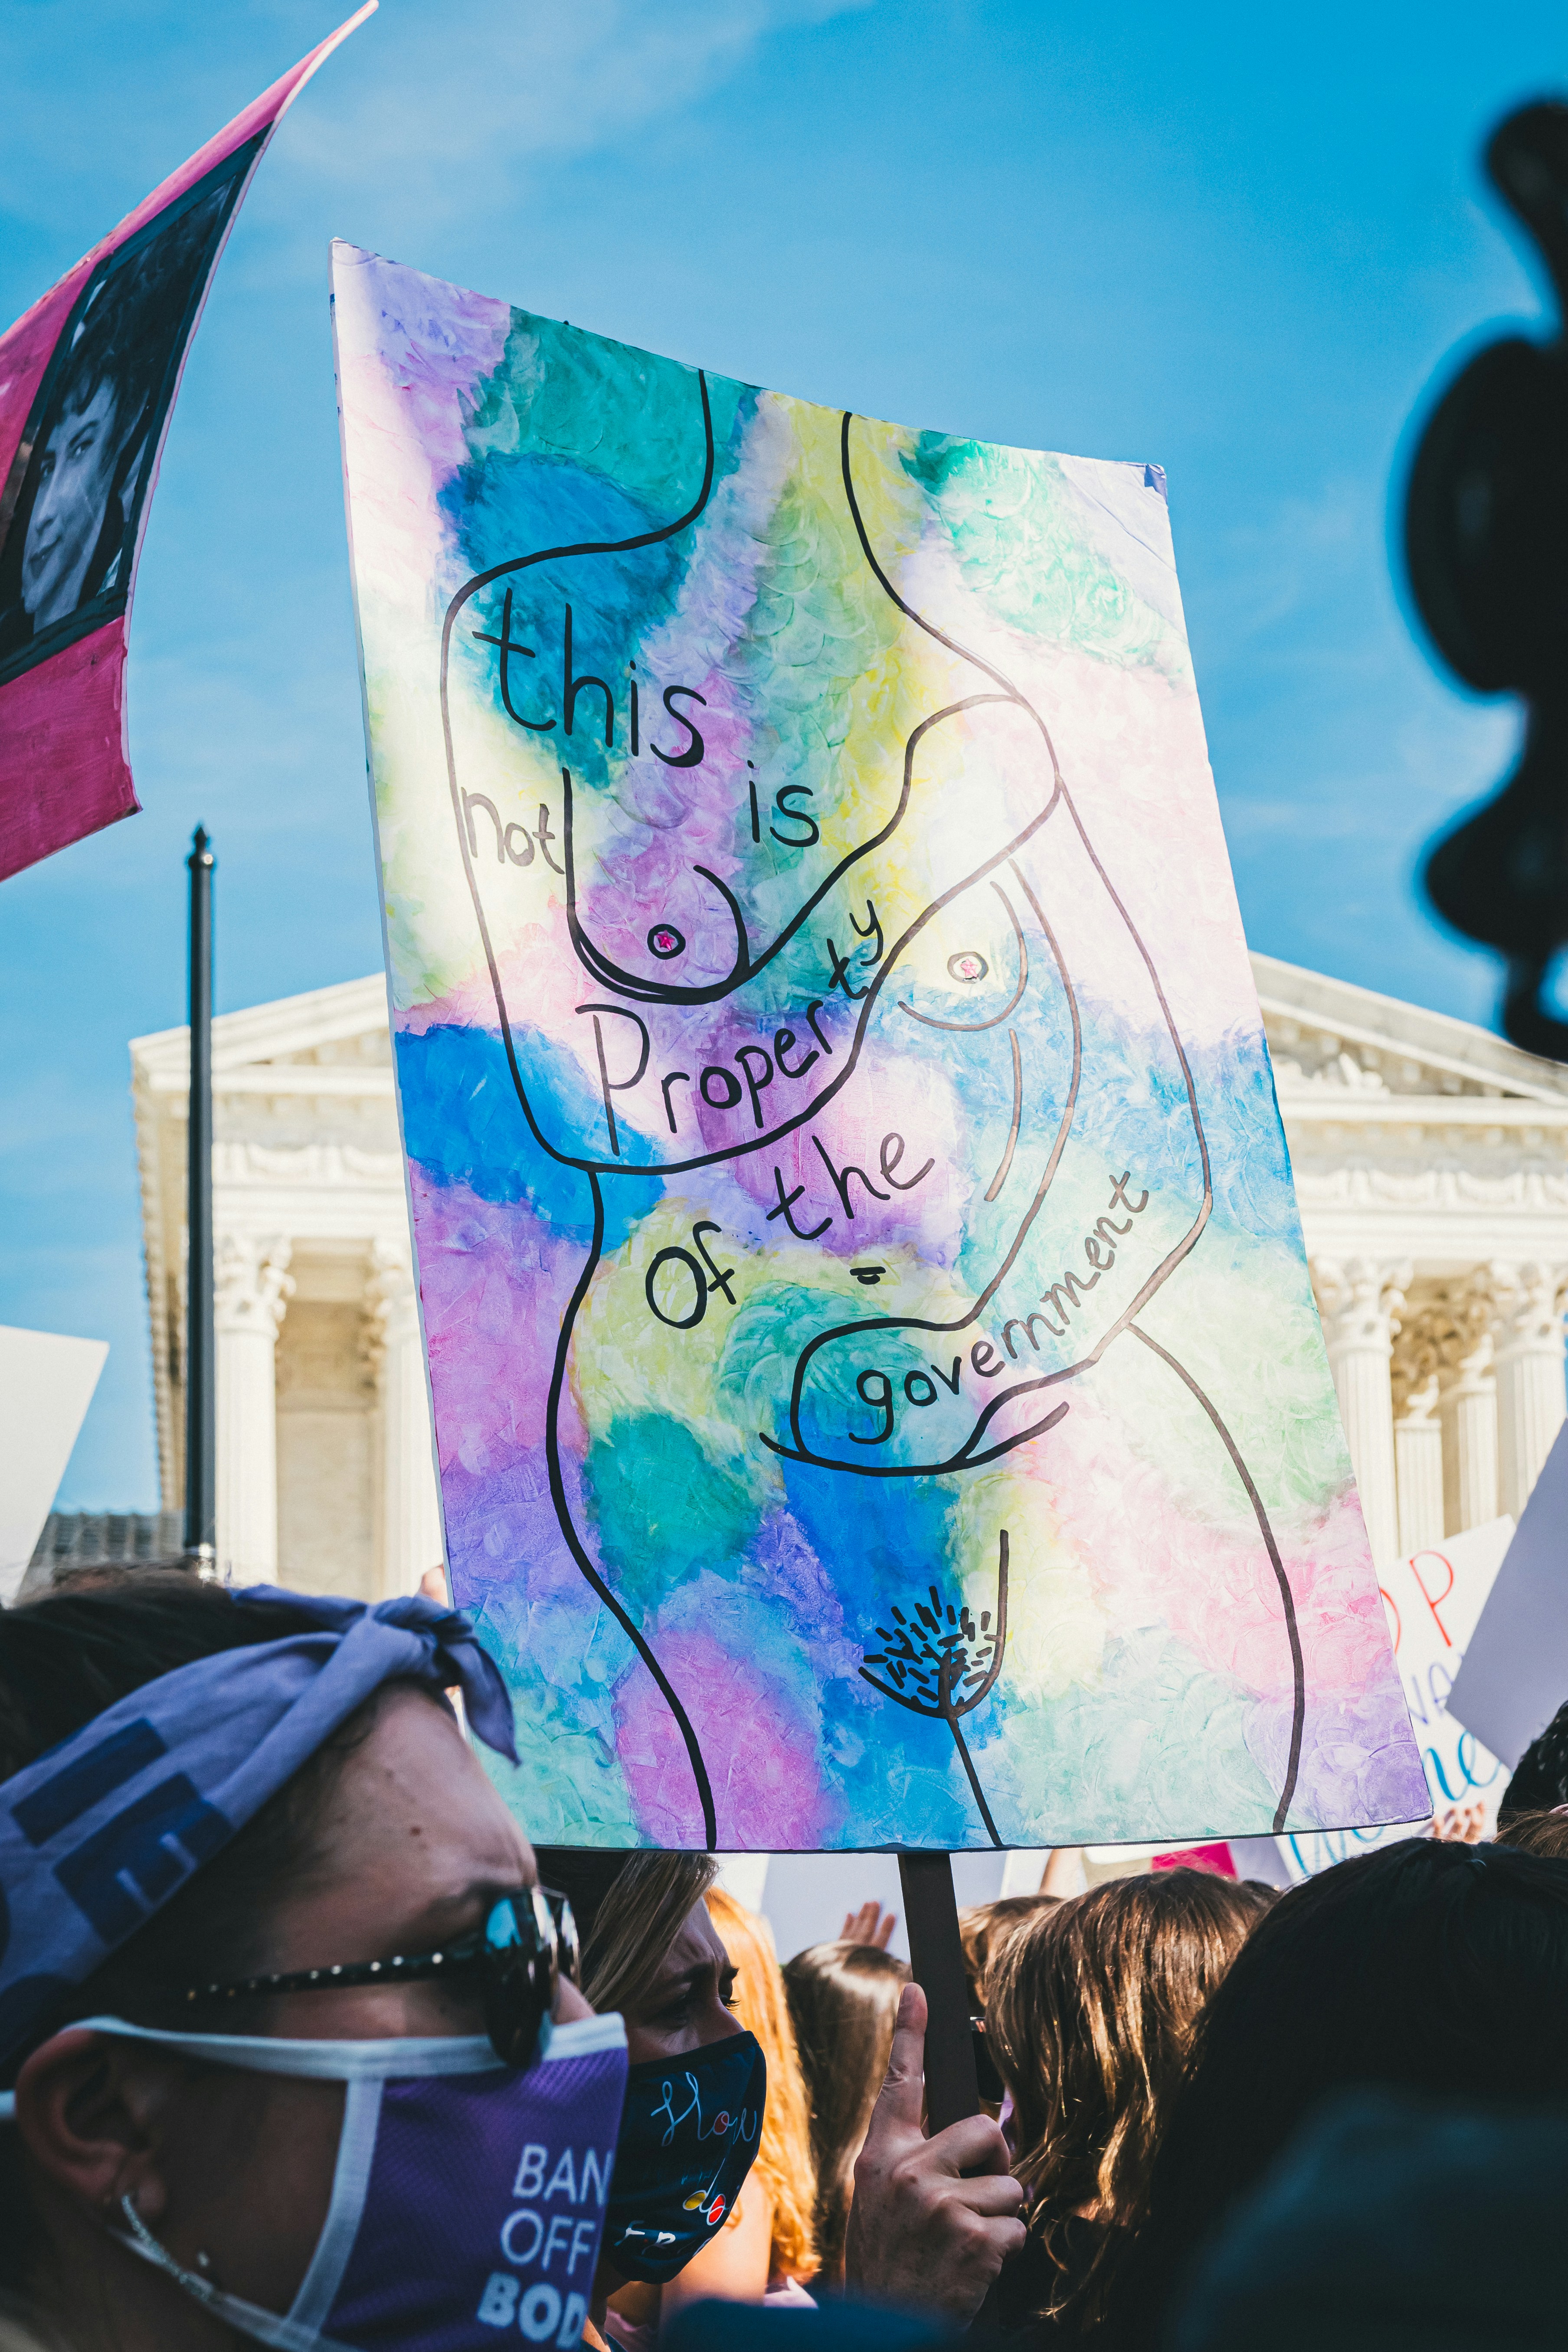 Das Bild zeigt eine Demonstration, bei der eine Person ein Schild hält, auf das ein nackter Torso gezeichnet ist, mit der Aufschrift "This is not property of the government"